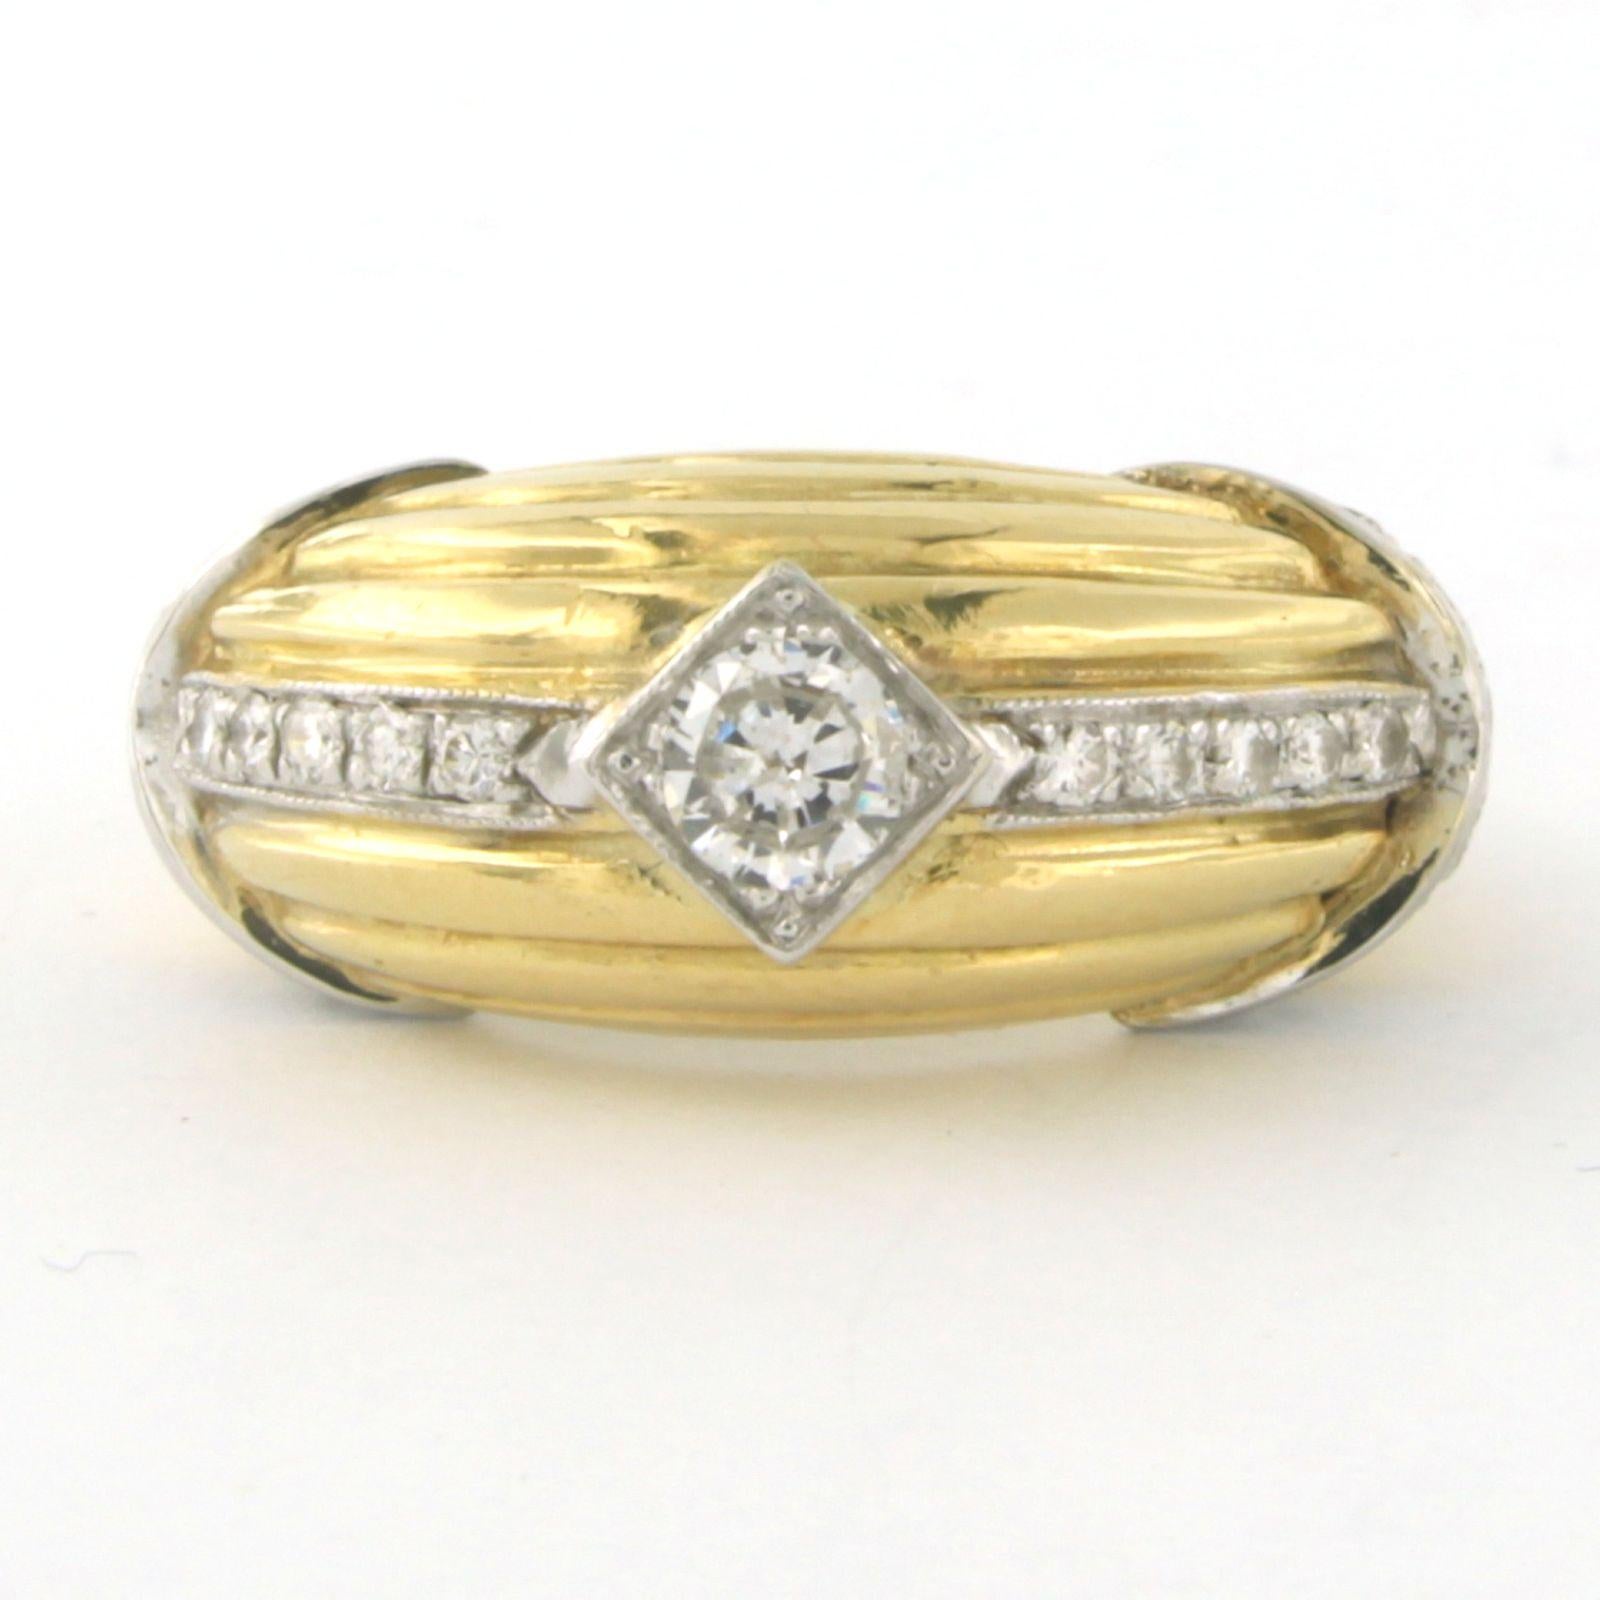 18 kt Bicolor-Ring mit Brillantschliff-Diamant 0,80 ct - F/G - VS/SI - Ringgröße U.S. 6 - EU. 16.5(52)

ausführliche Beschreibung

die Oberseite des Rings ist 1,0 cm breit und 7,7 mm hoch

Ringgröße U.S. 6 - EU. 16.5(52), Ring kann zum